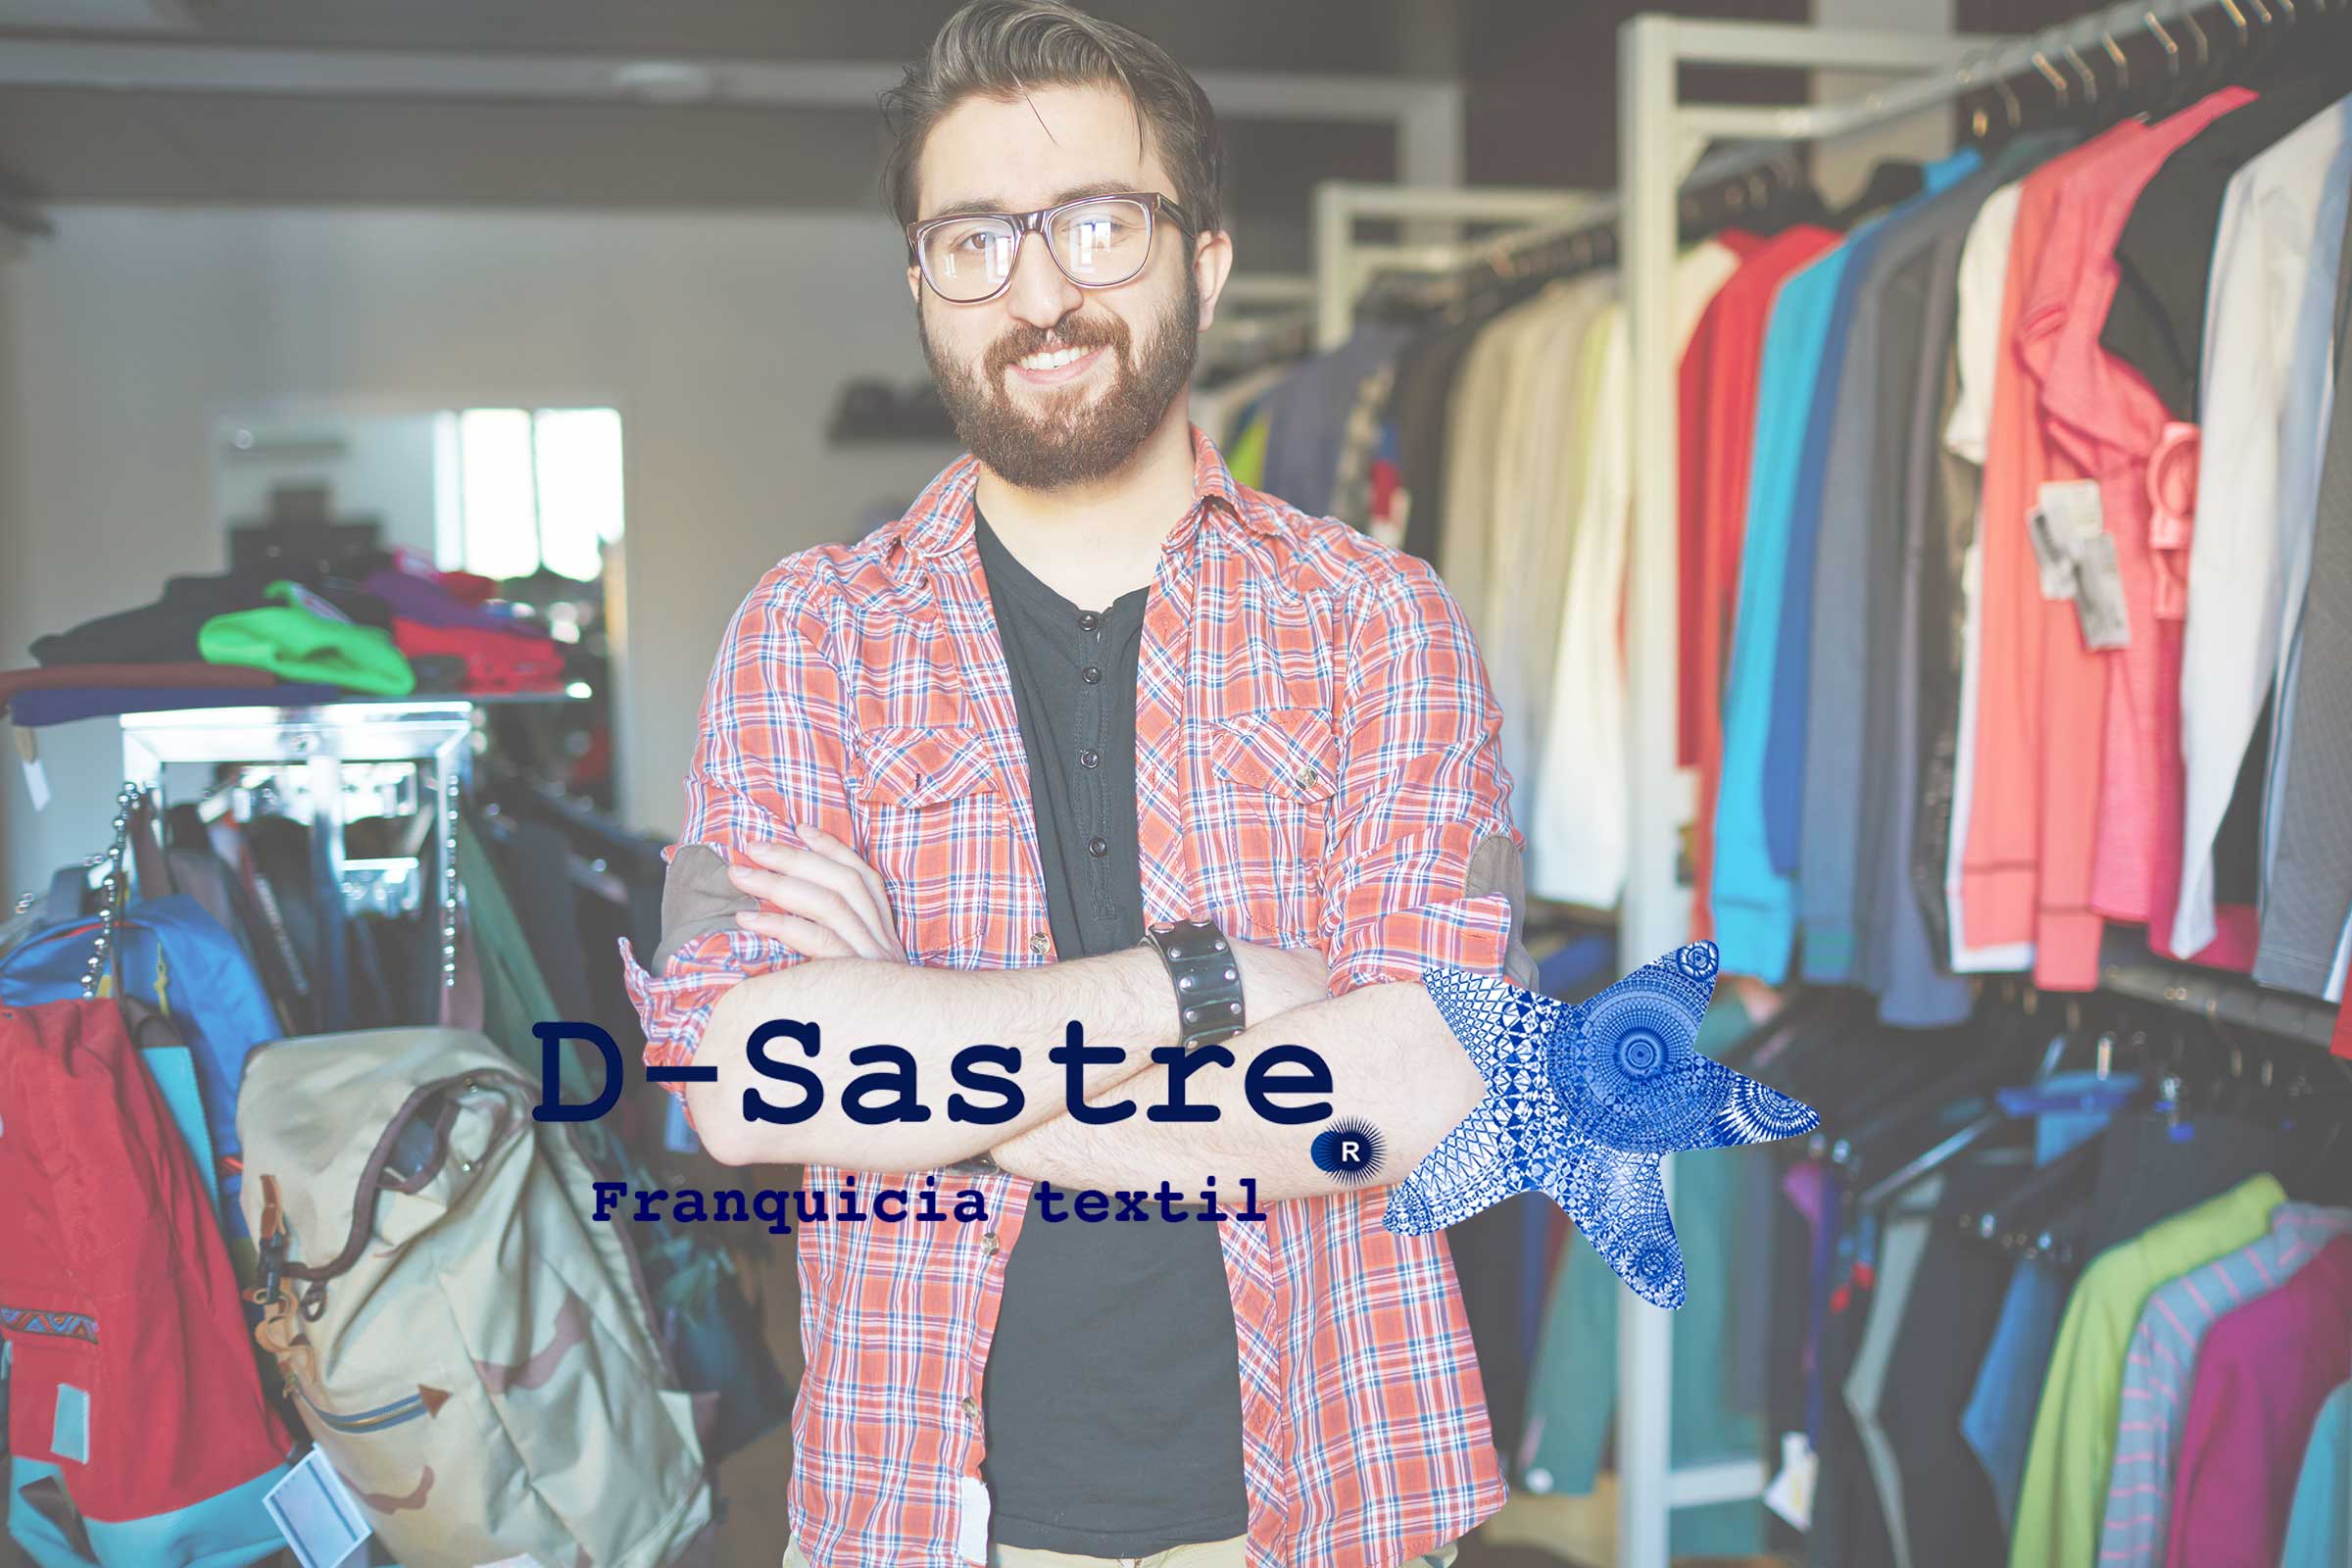 D-Sastre, pioneros en la franquicia textil.